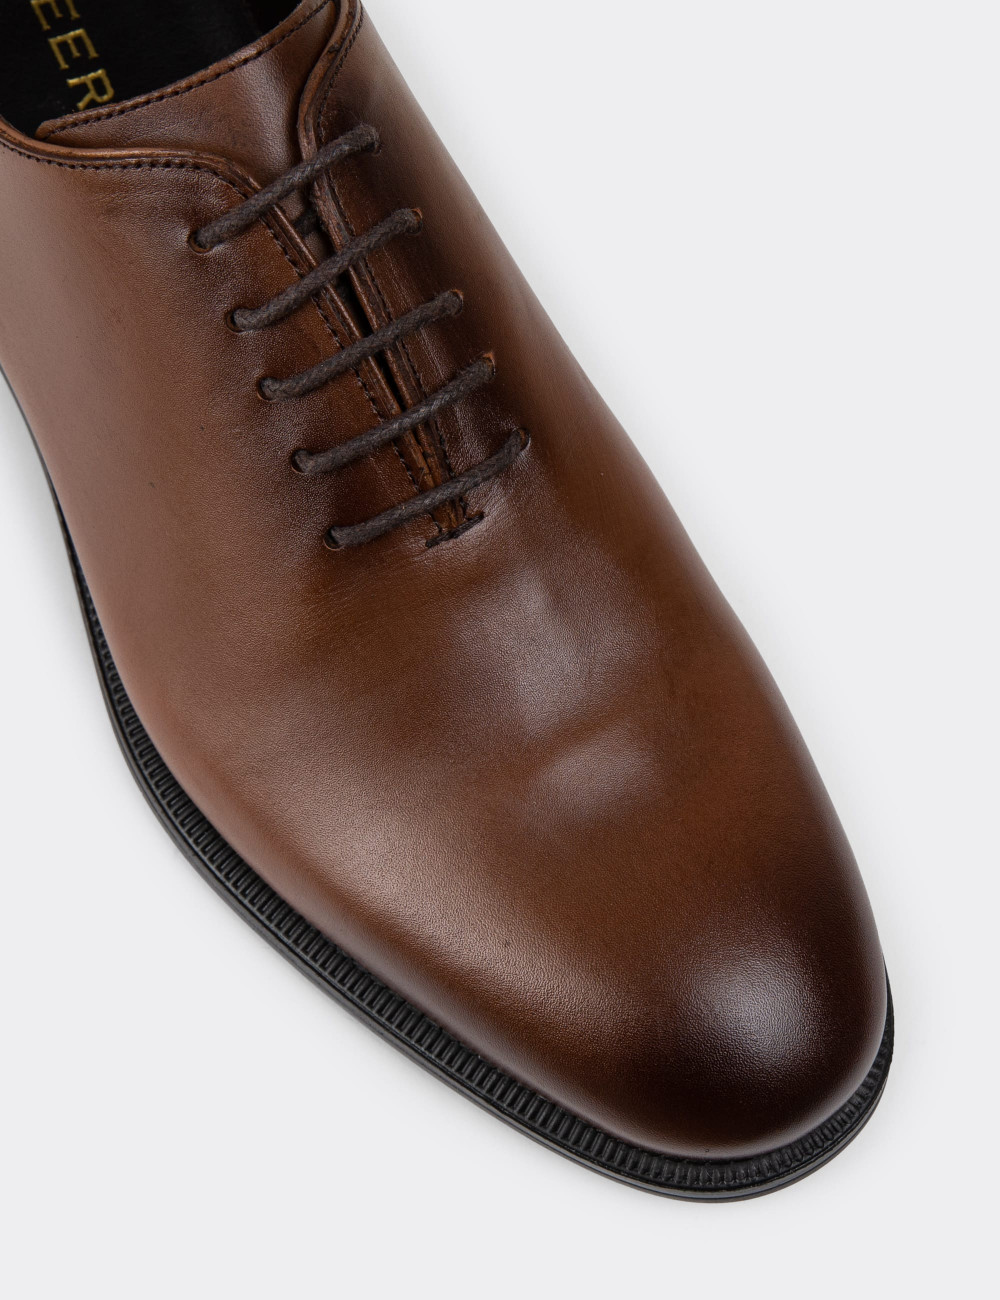 Hakiki Deri Kahverengi Erkek Klasik Ayakkabı - 01830MKHVC01